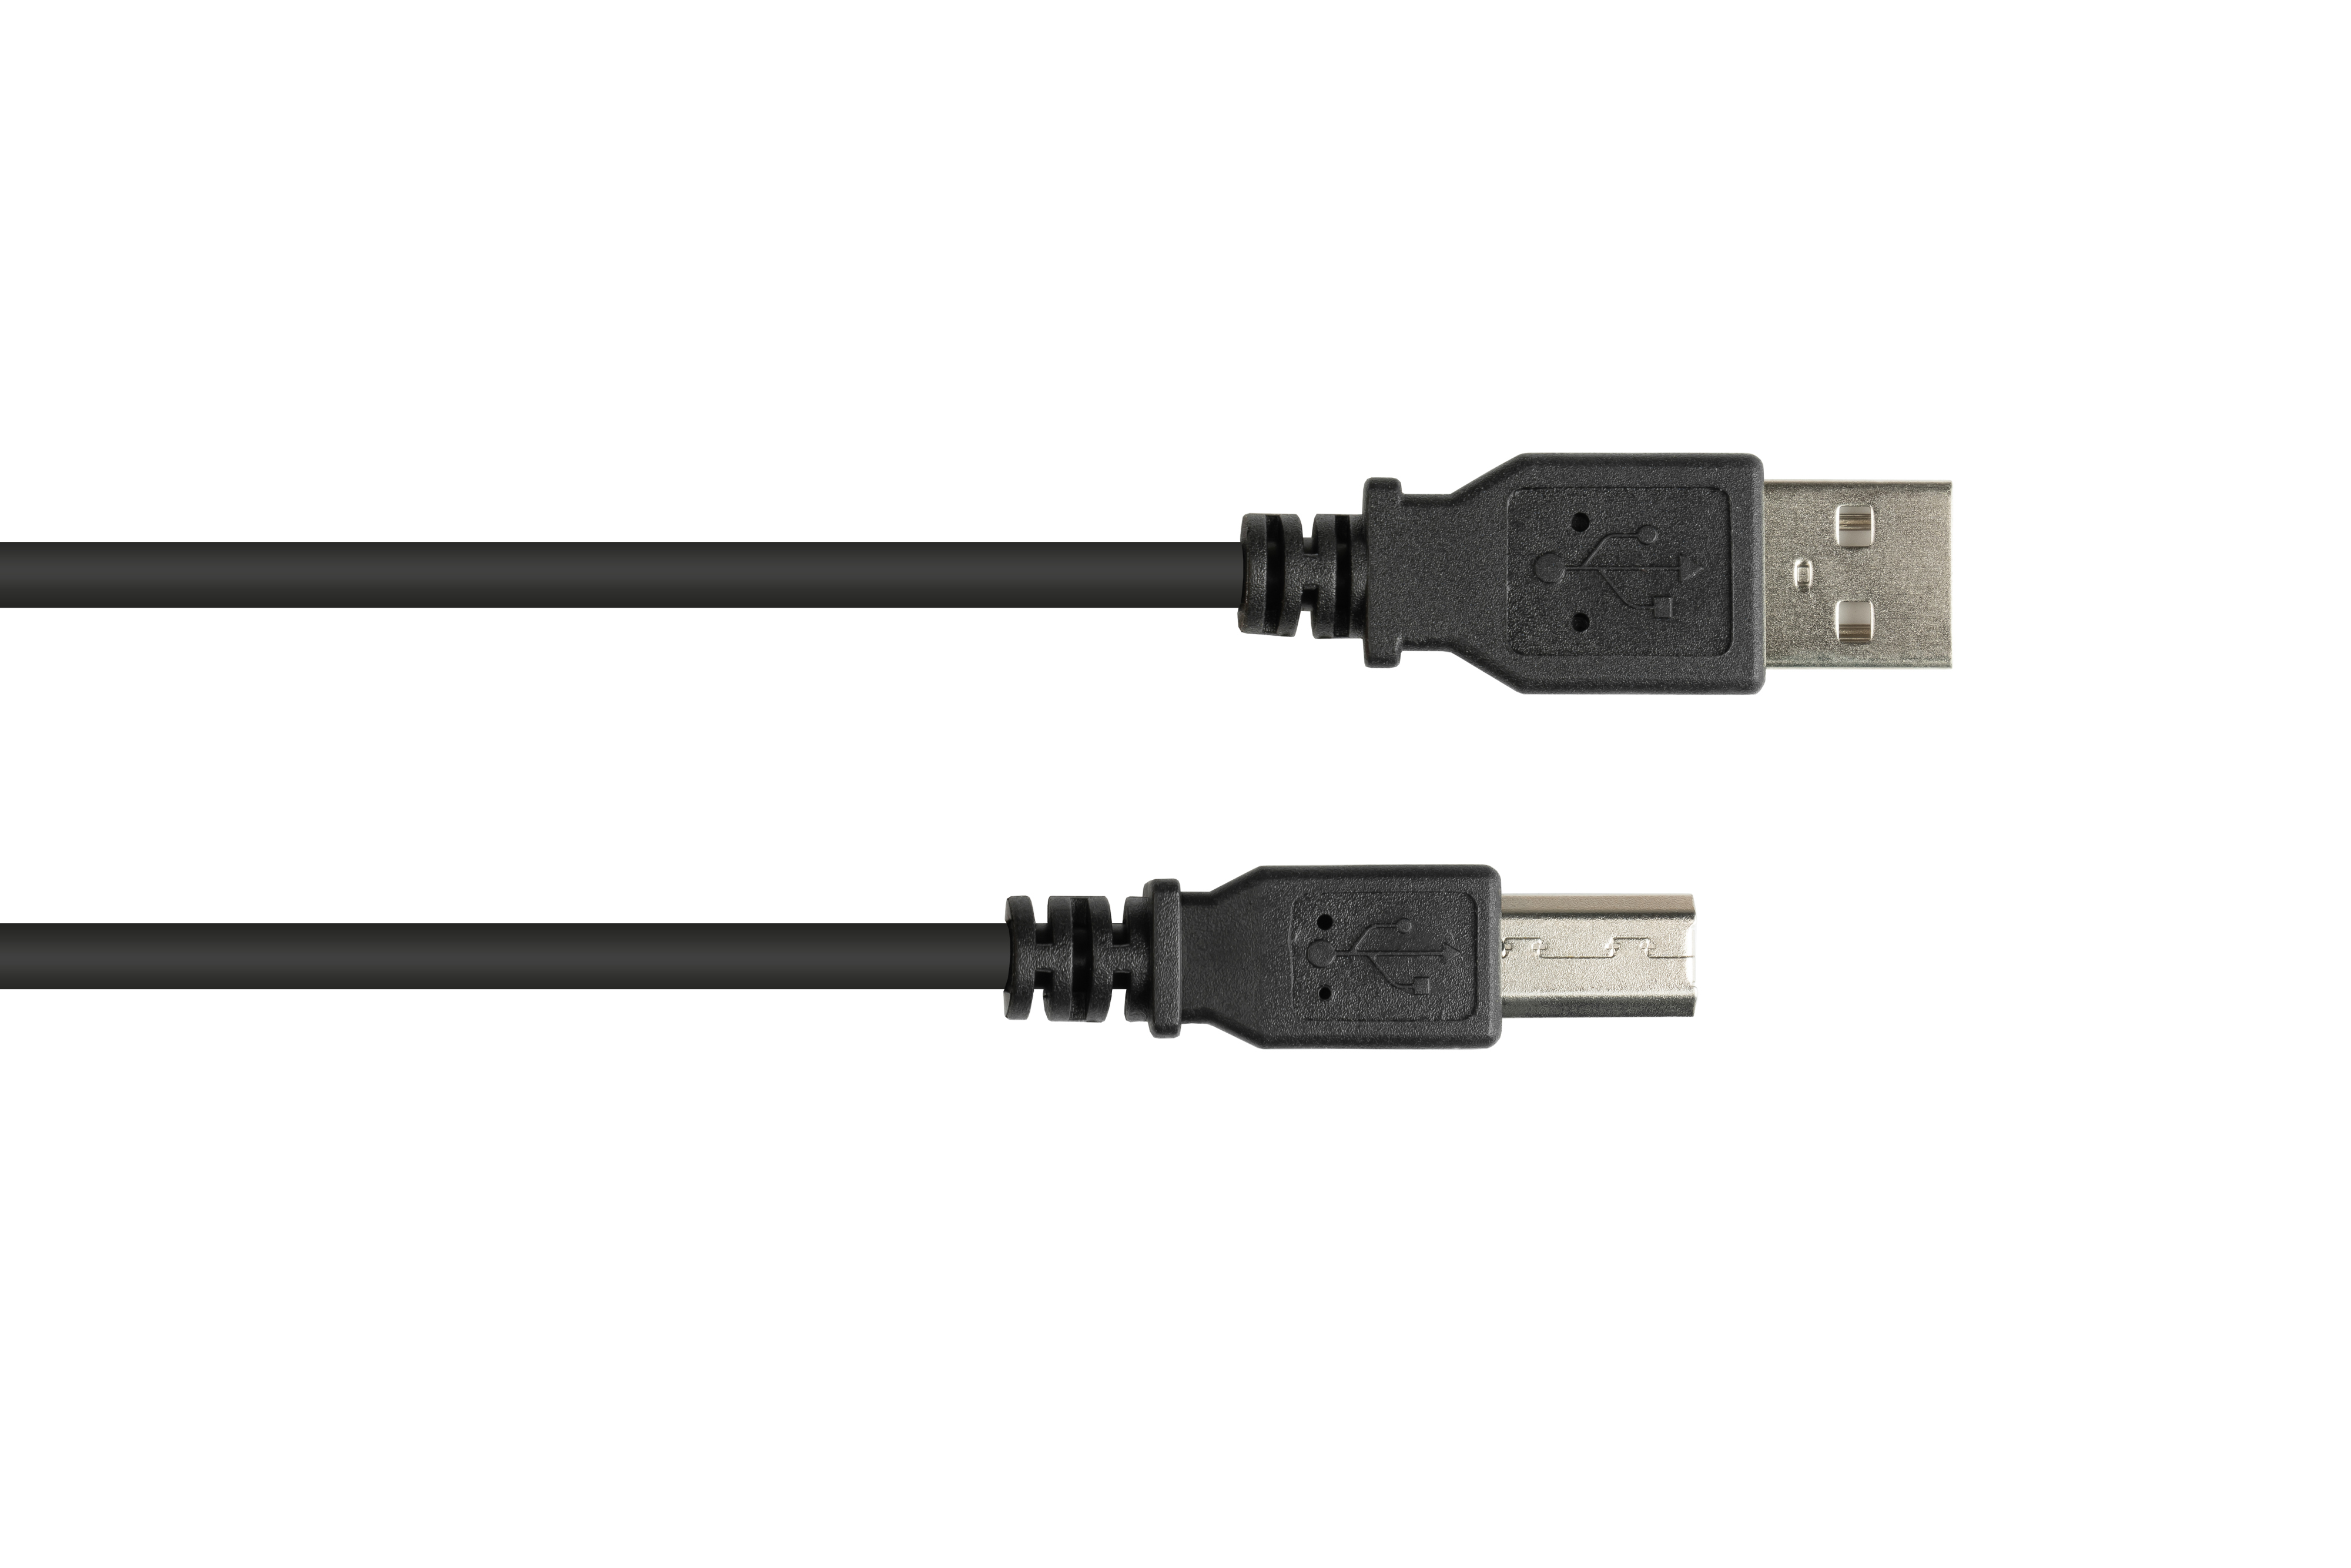 GOOD CONNECTIONS USB 2.0 EASY Anschlusskabel Stecker an Stecker A B, schwarz